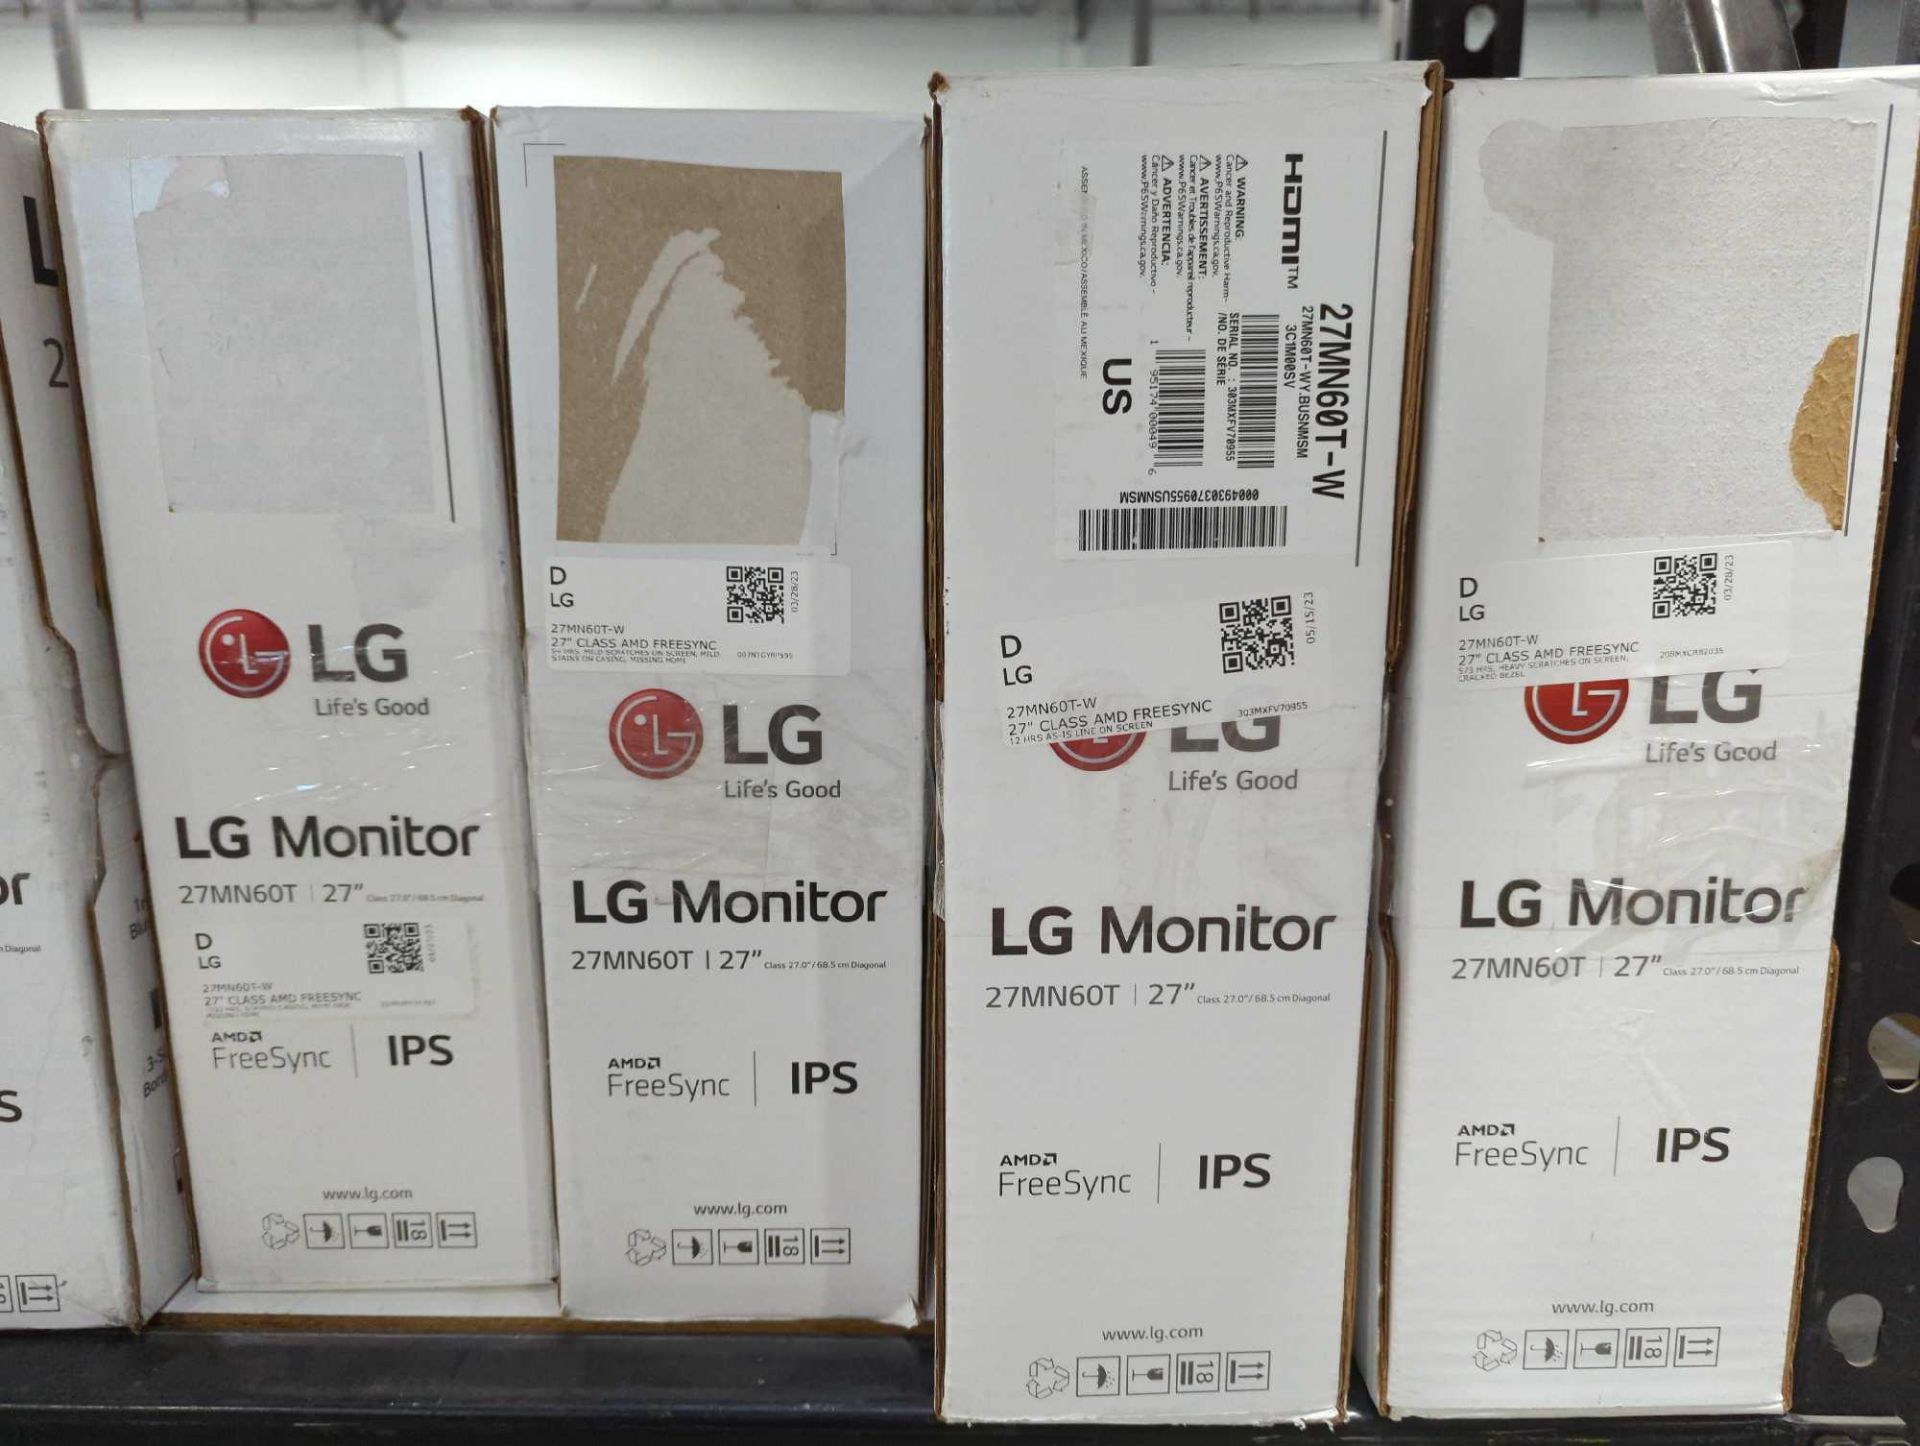 LG Monitors - Image 4 of 4